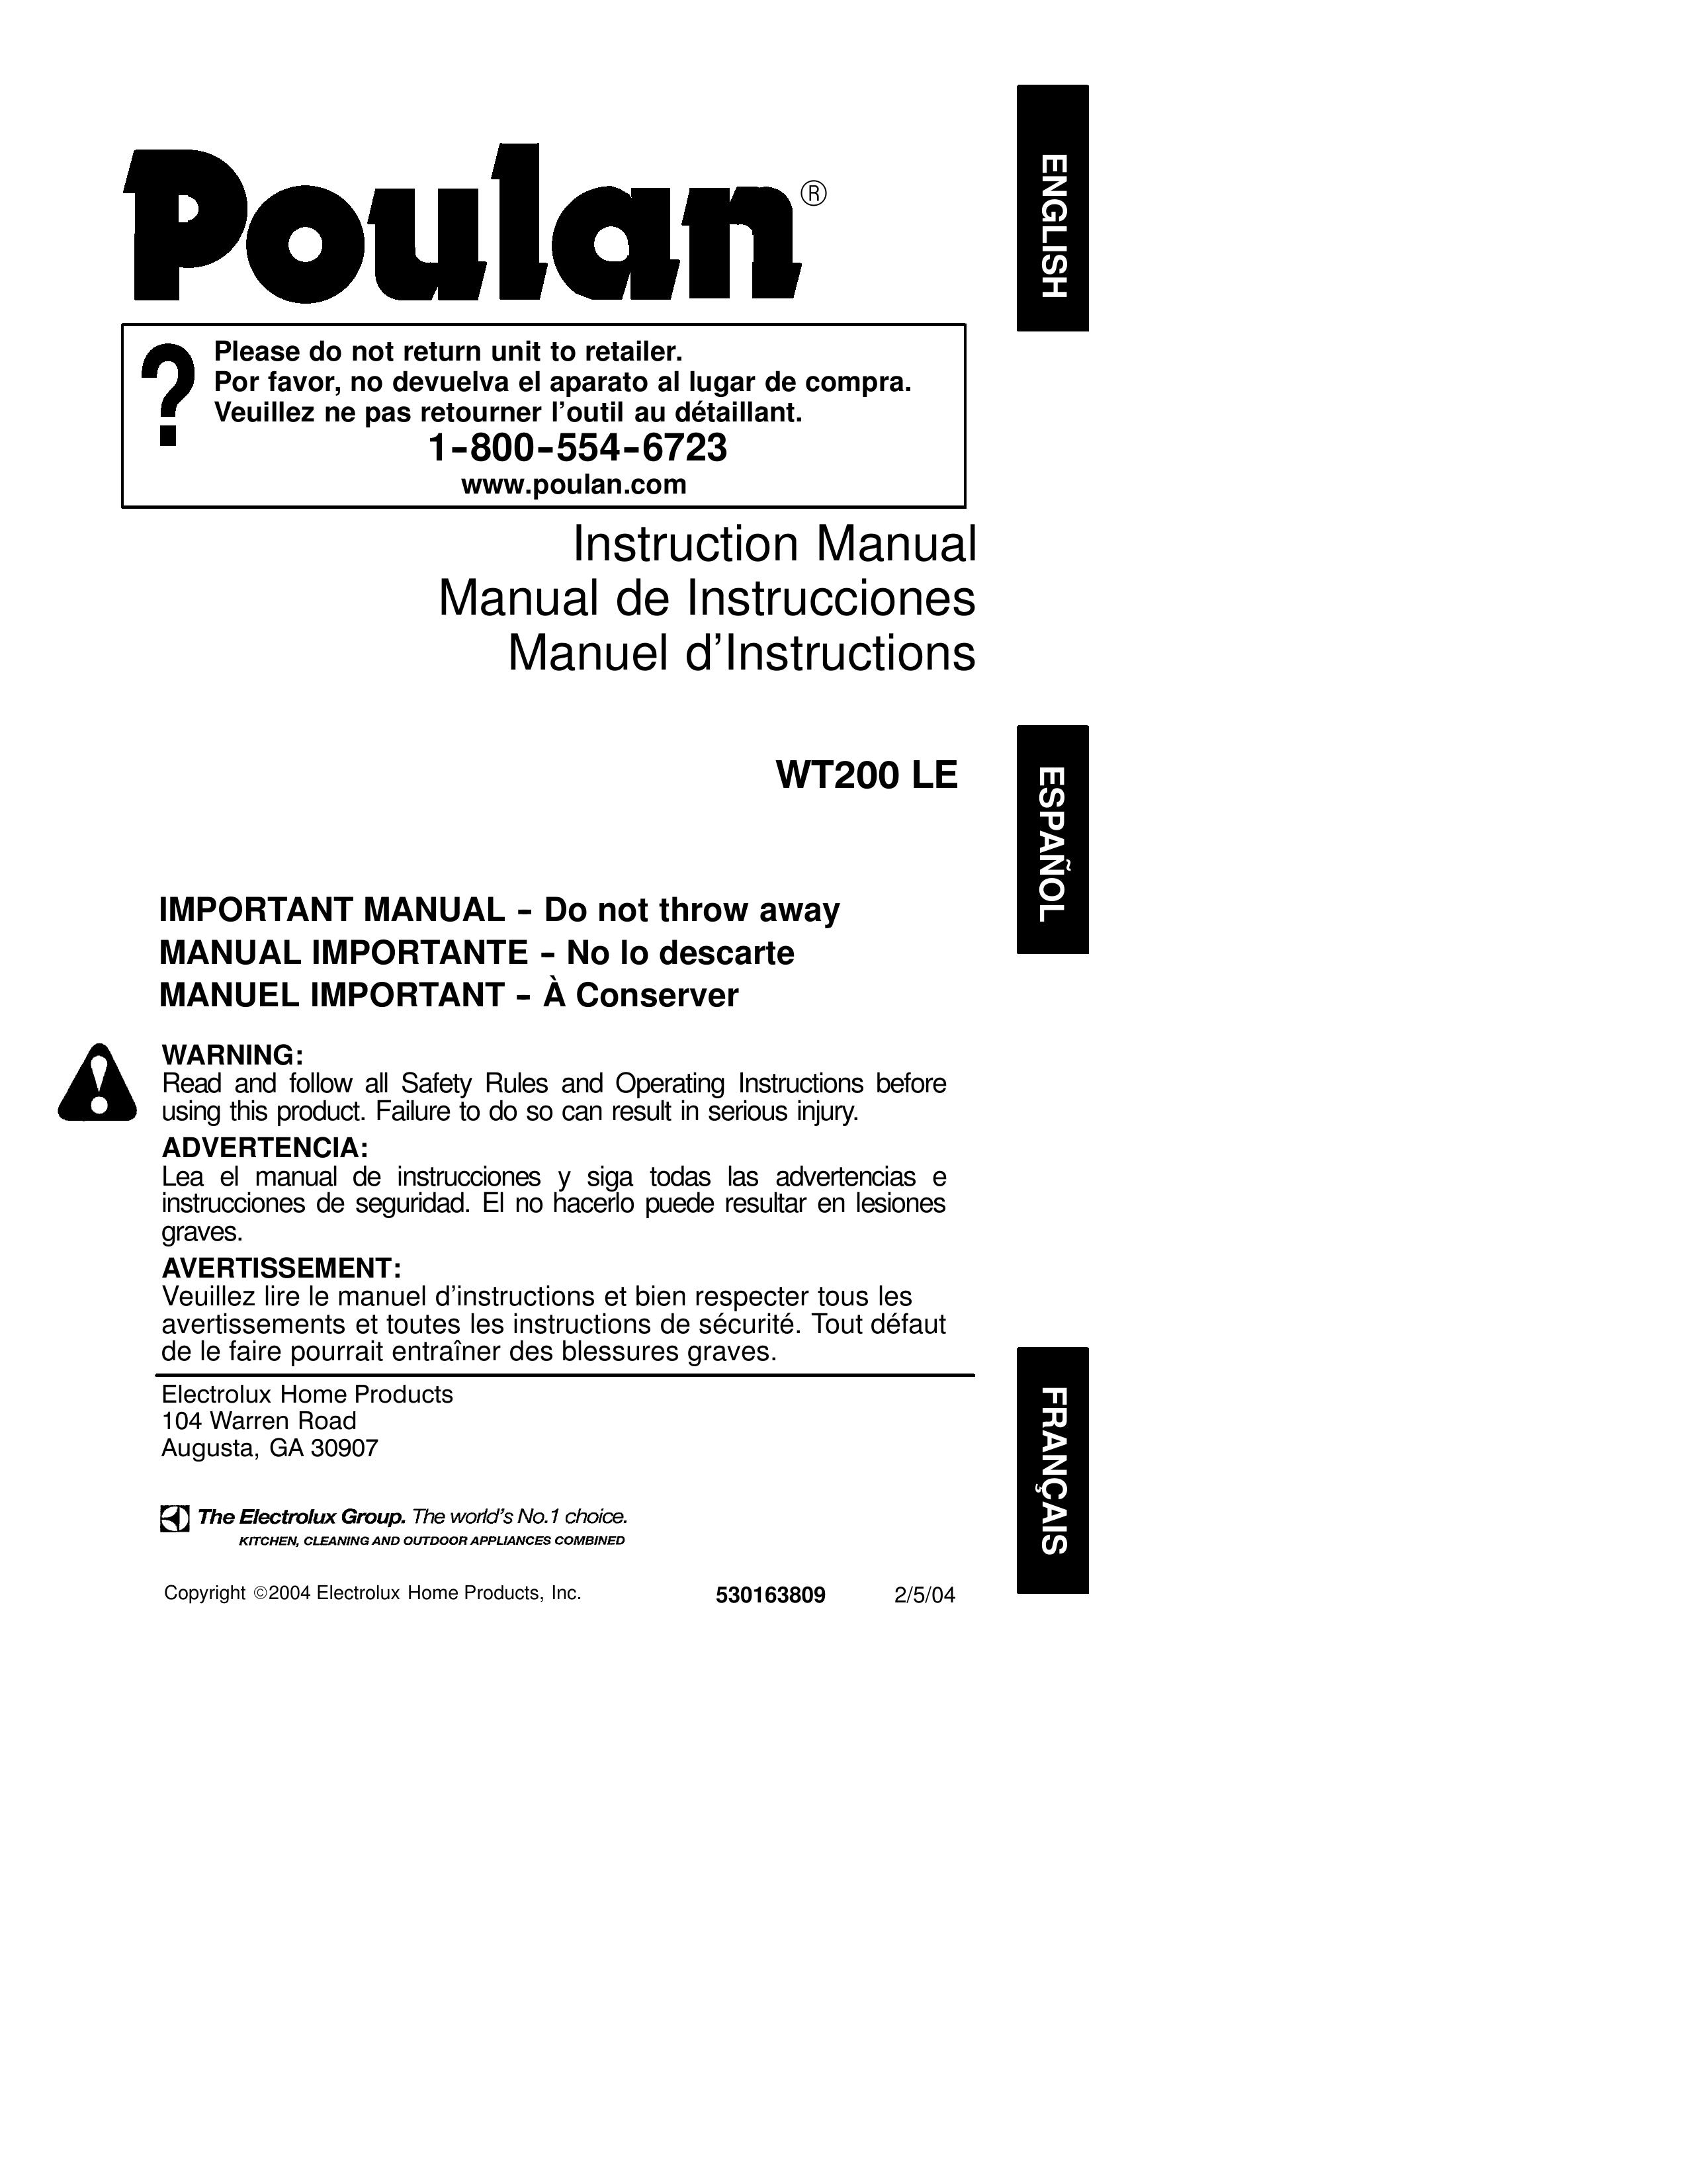 Poulan 530163809 Blower User Manual